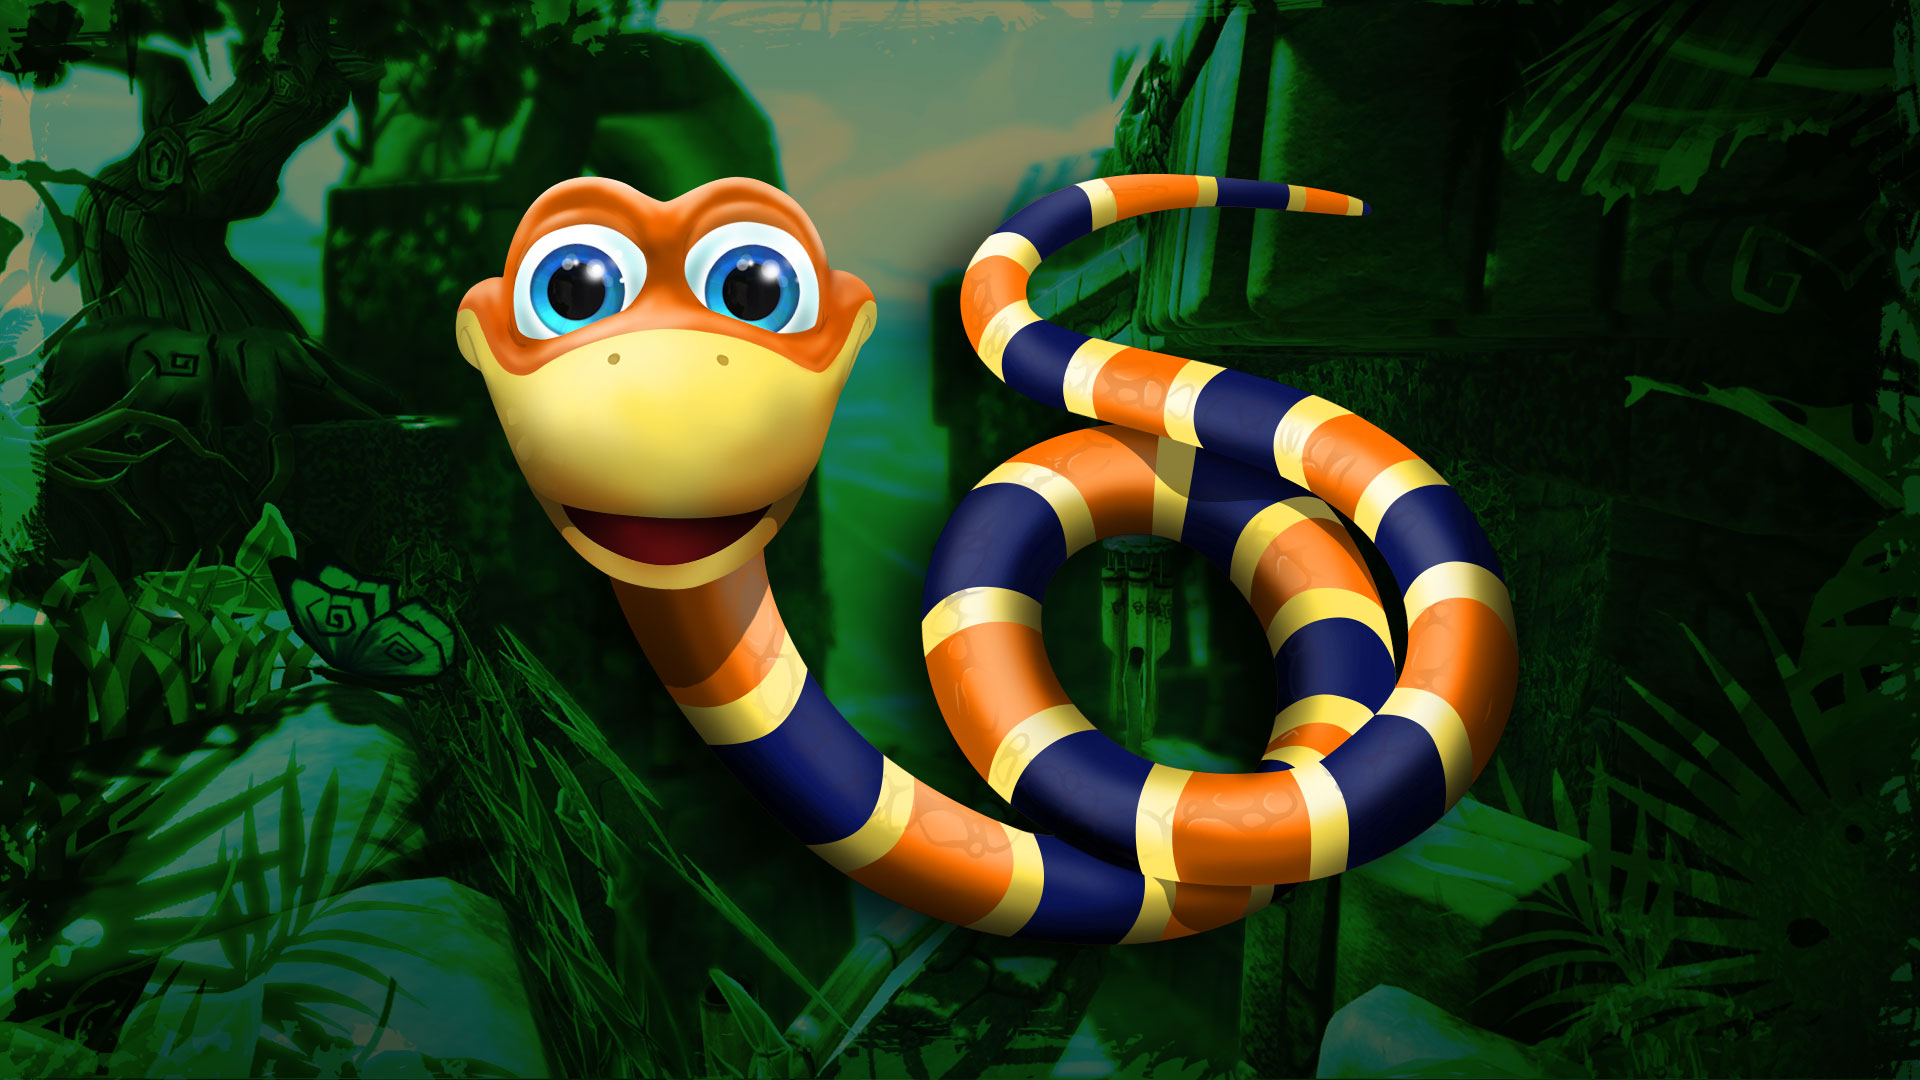 Comunidade Steam :: Snake Pass